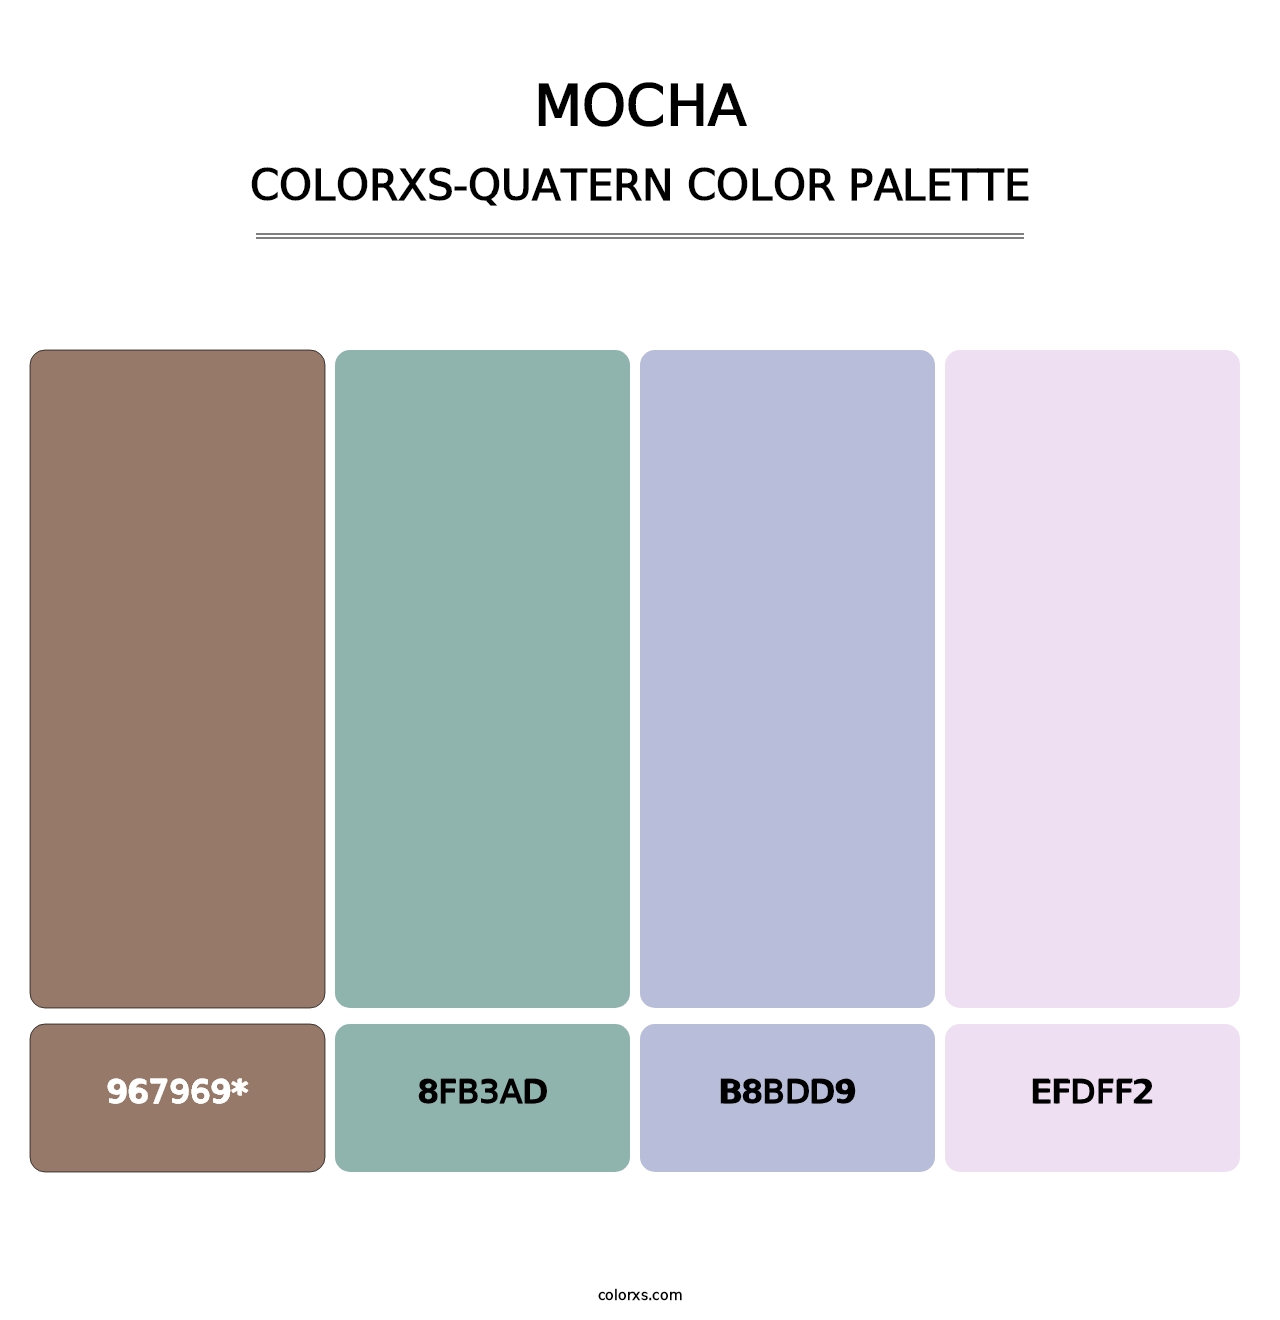 Mocha - Colorxs Quatern Palette